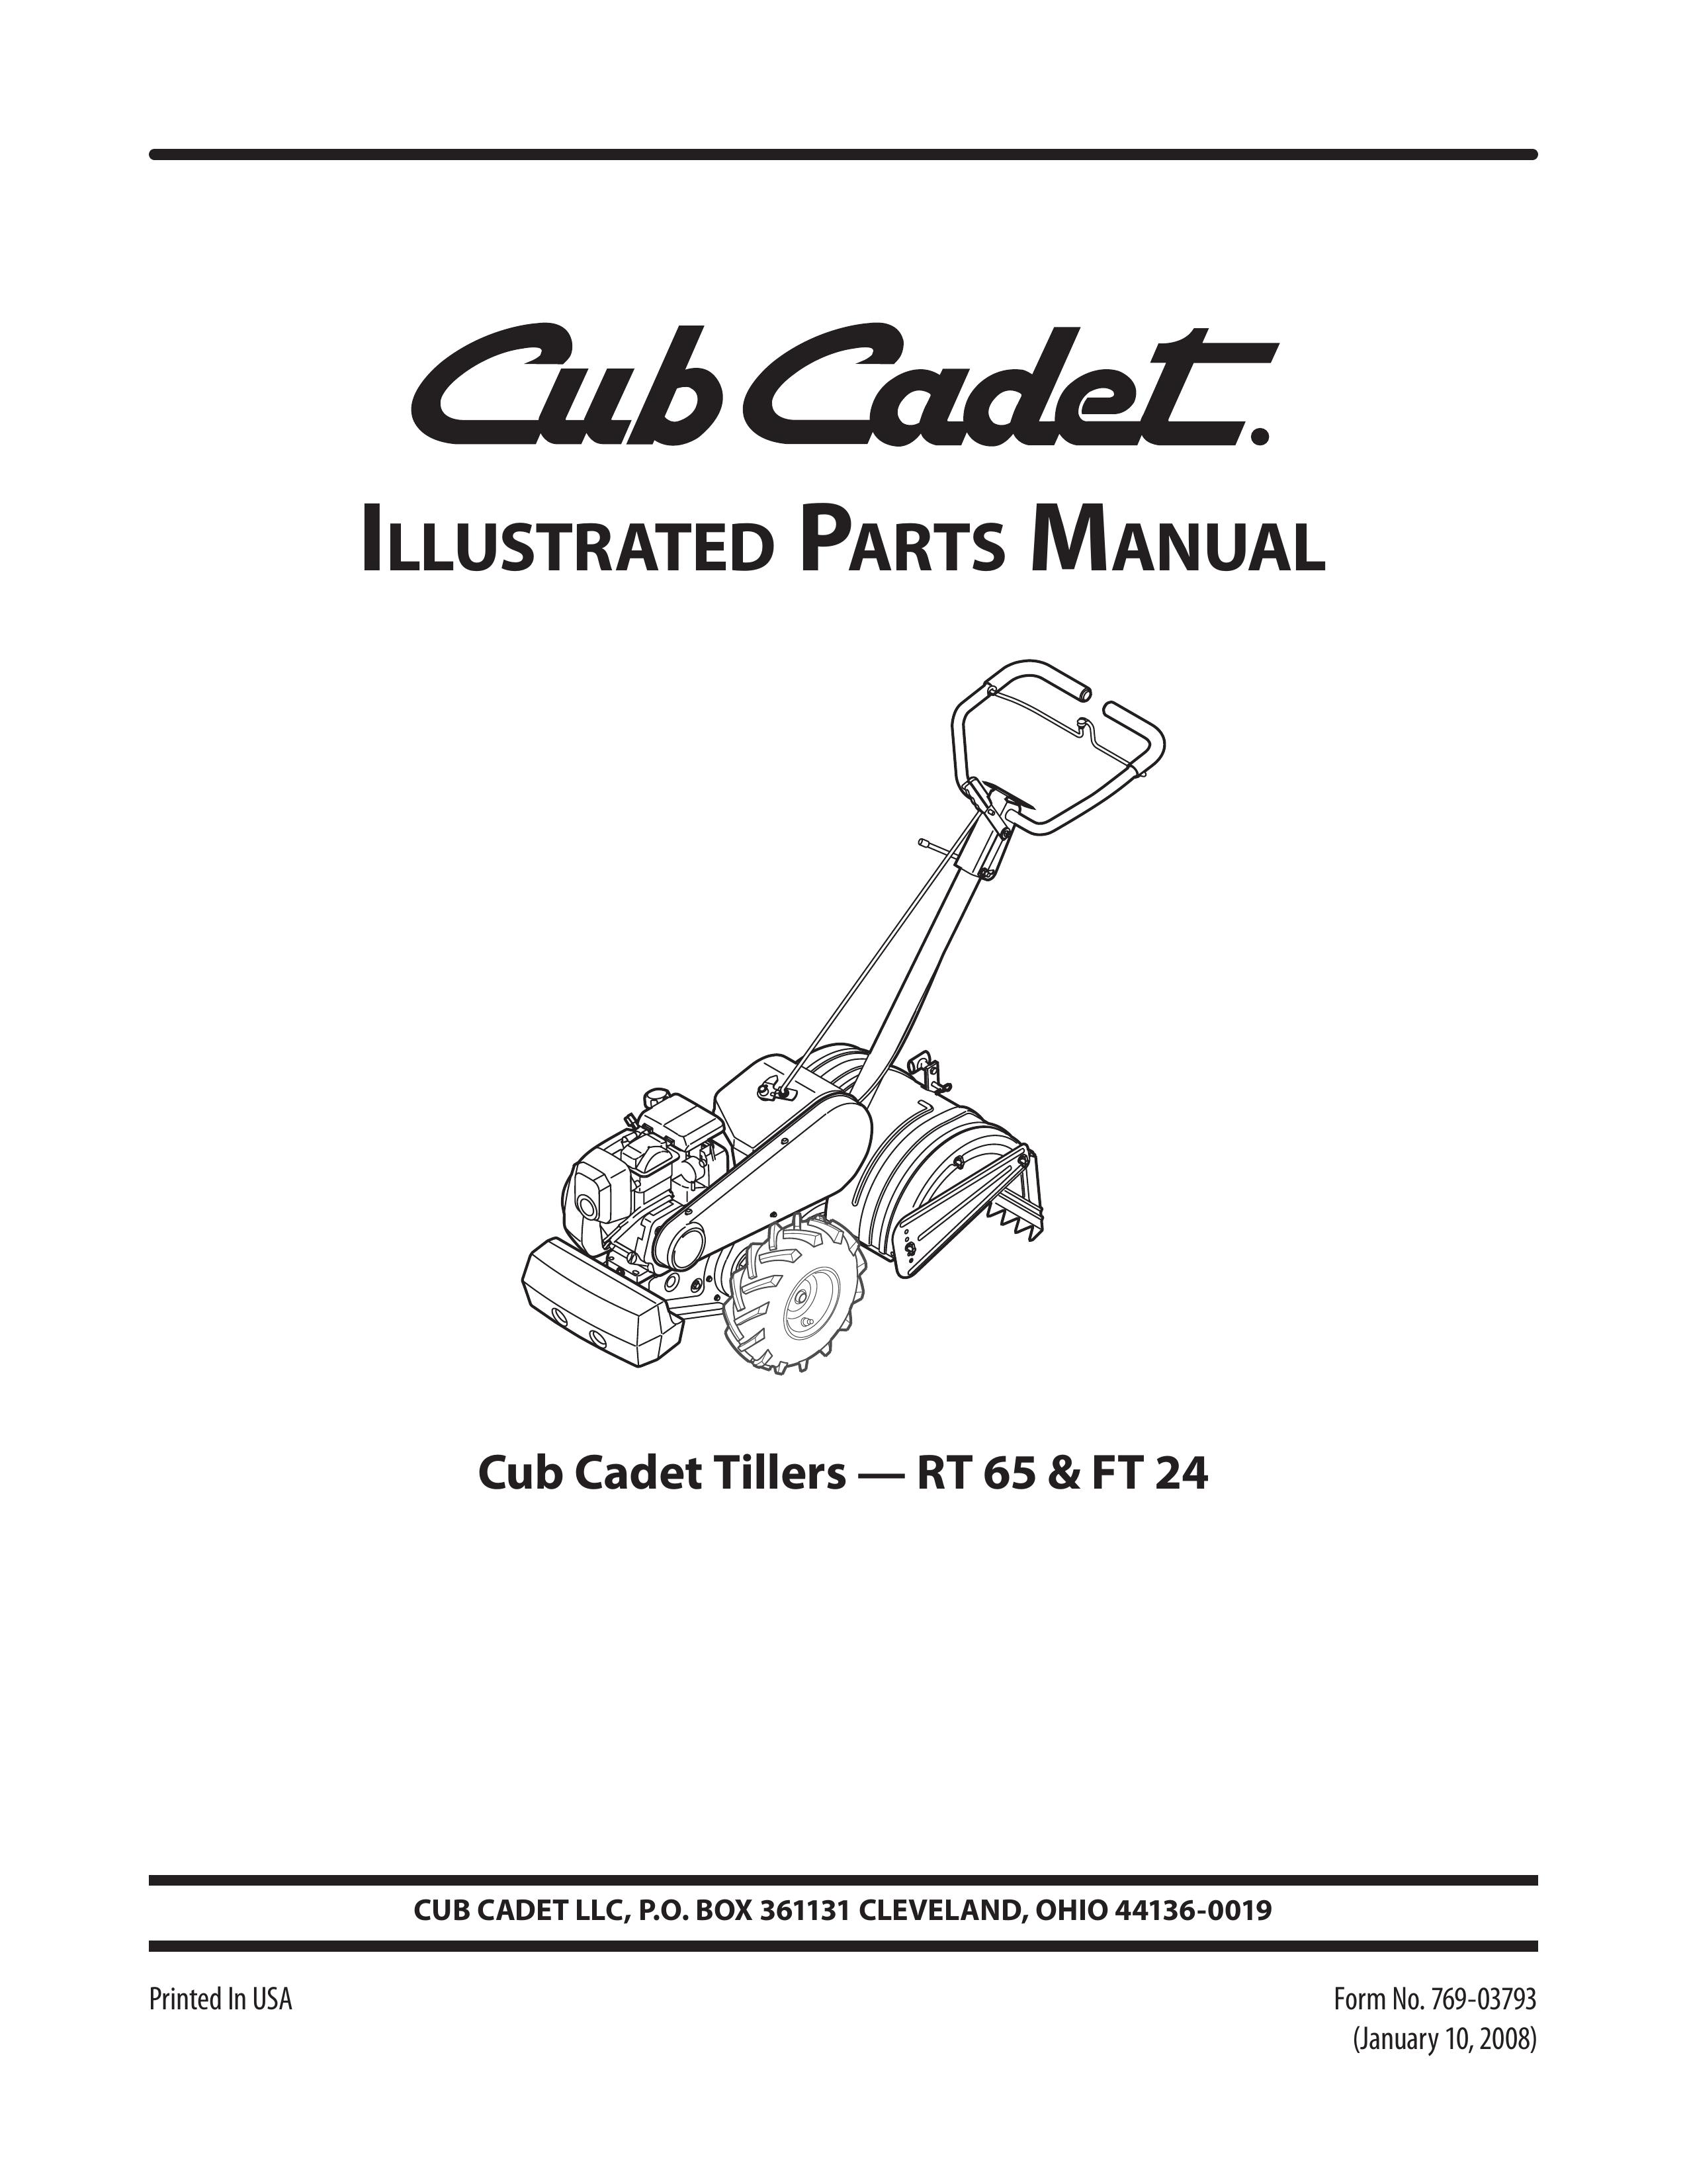 Cub Cadet RT 65 Tiller User Manual